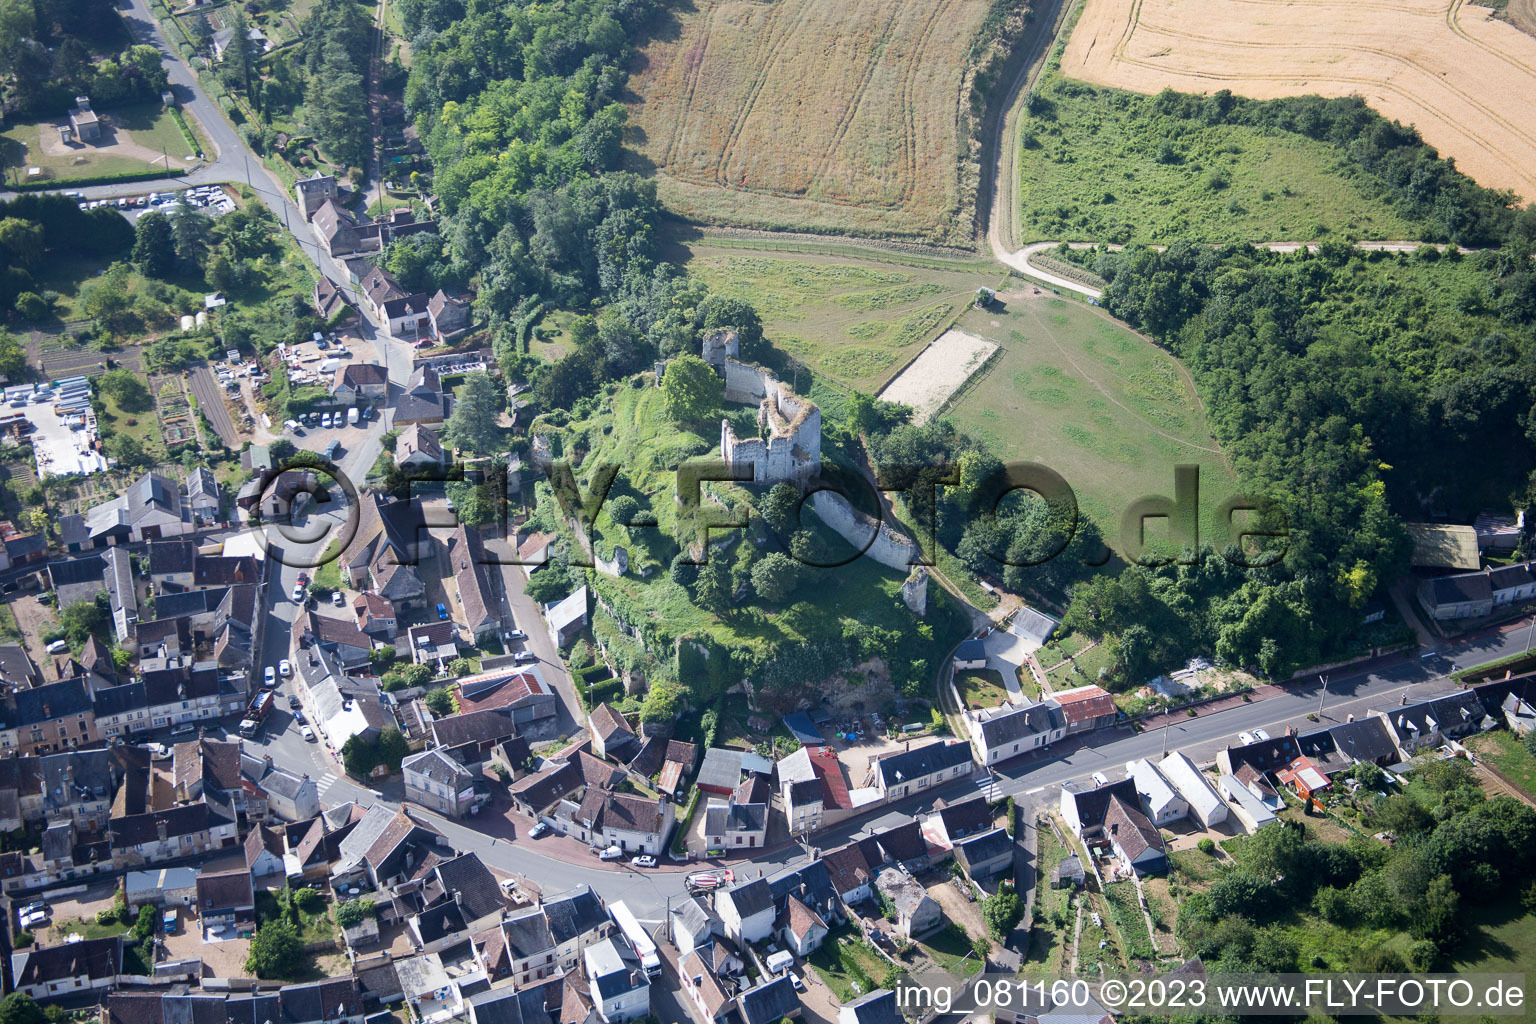 Montoire-sur-le-Loir im Bundesland Loir-et-Cher, Frankreich von der Drohne aus gesehen